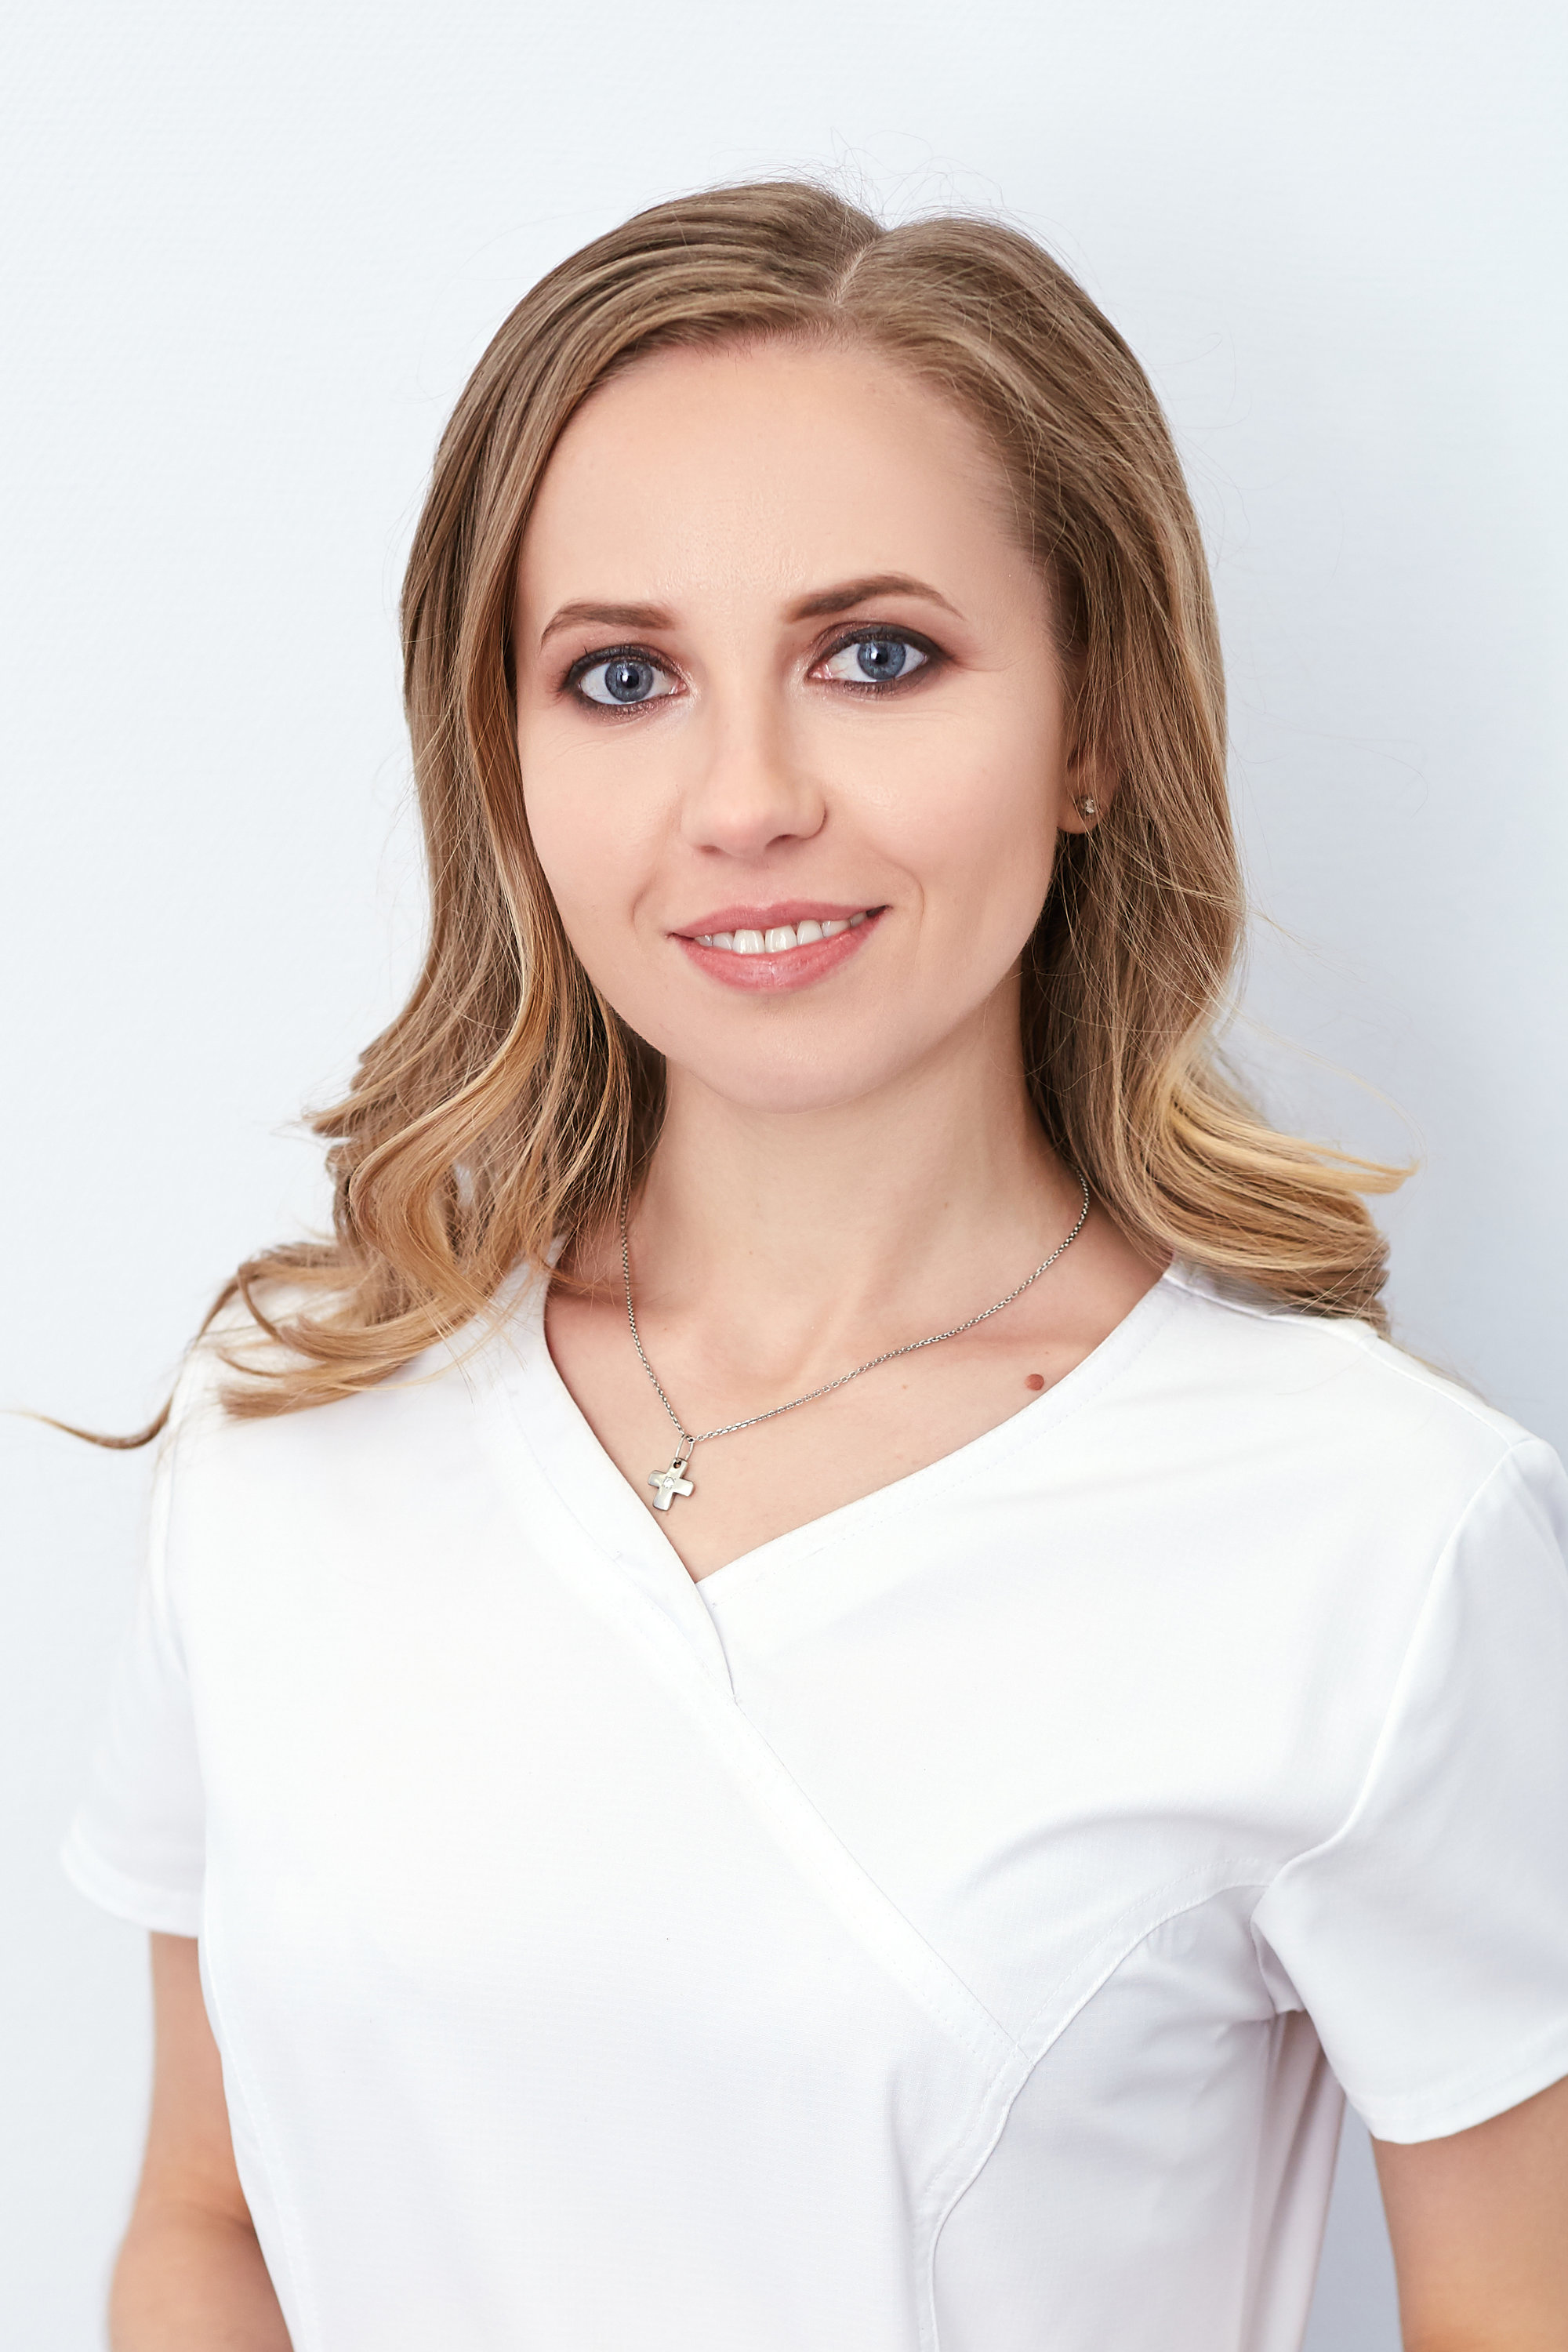 Екатерина лысенкова фото